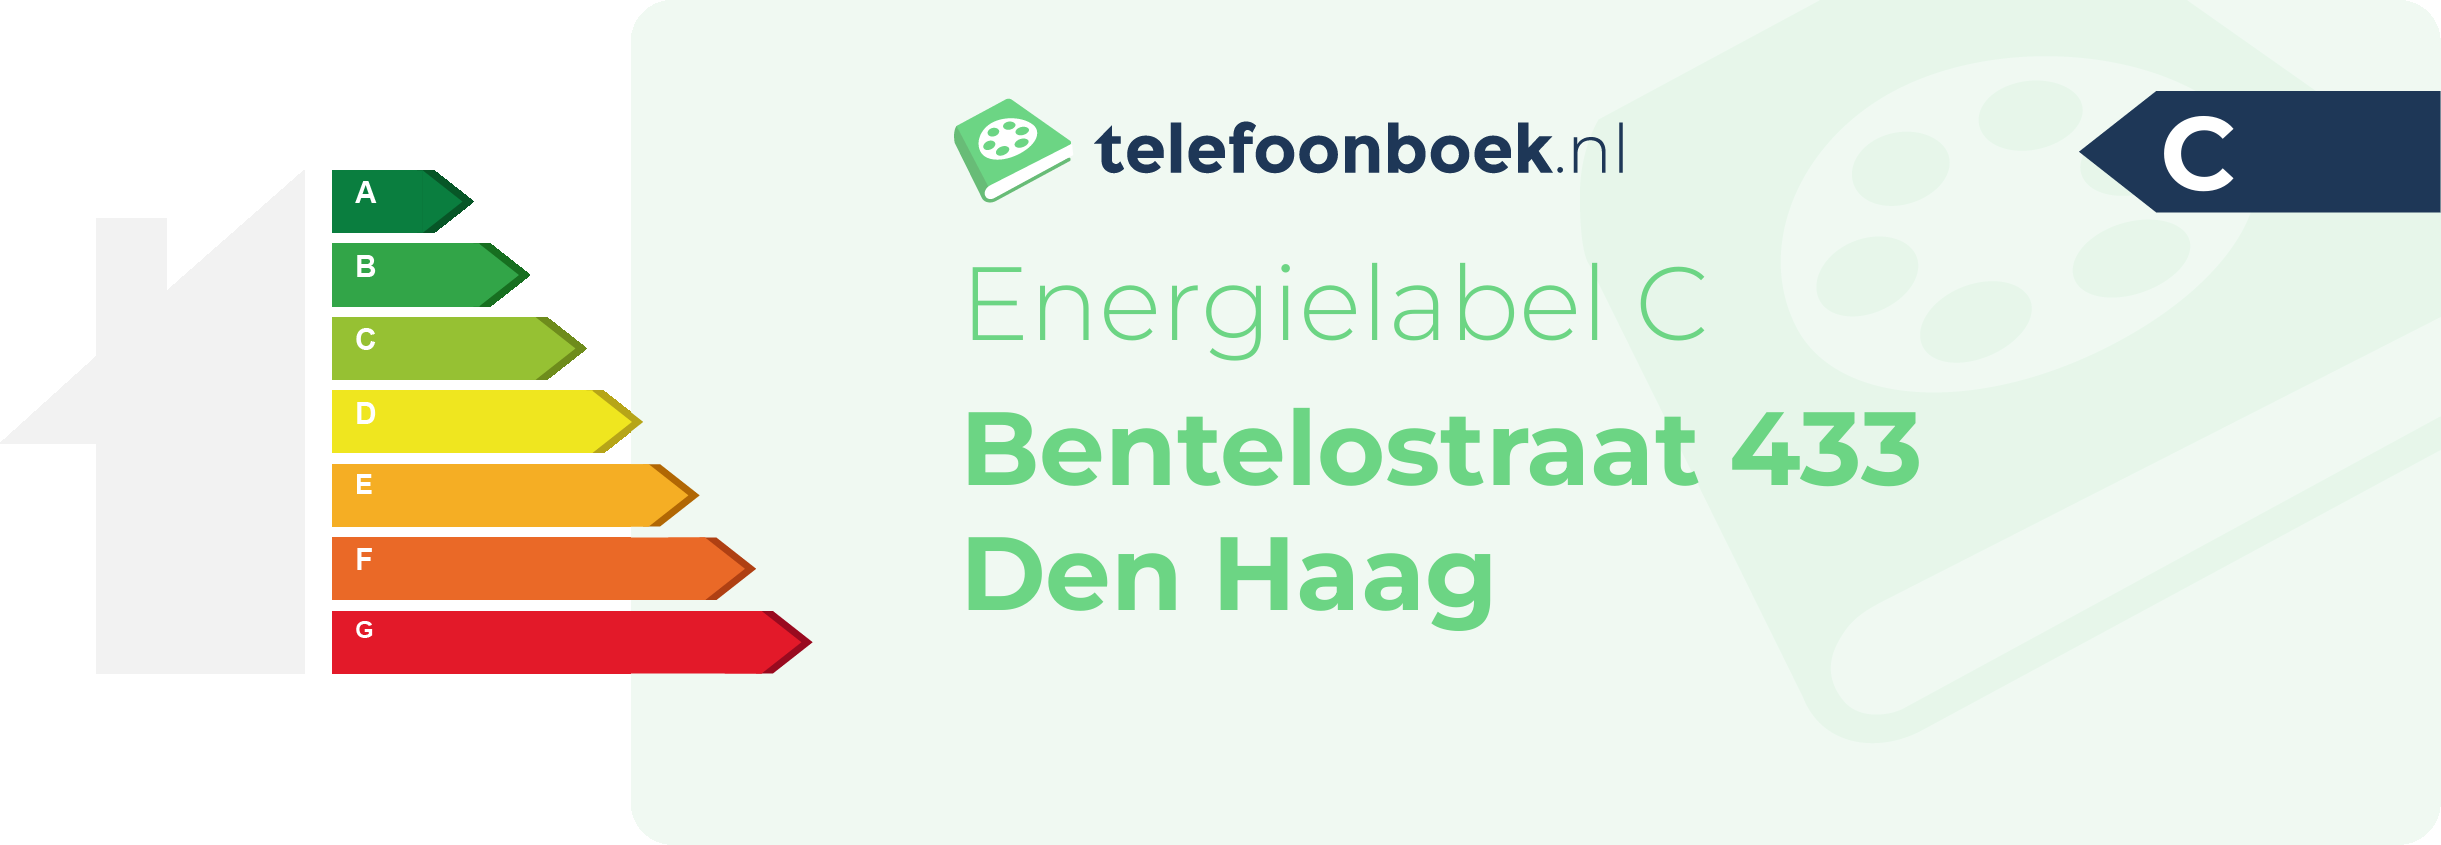 Energielabel Bentelostraat 433 Den Haag